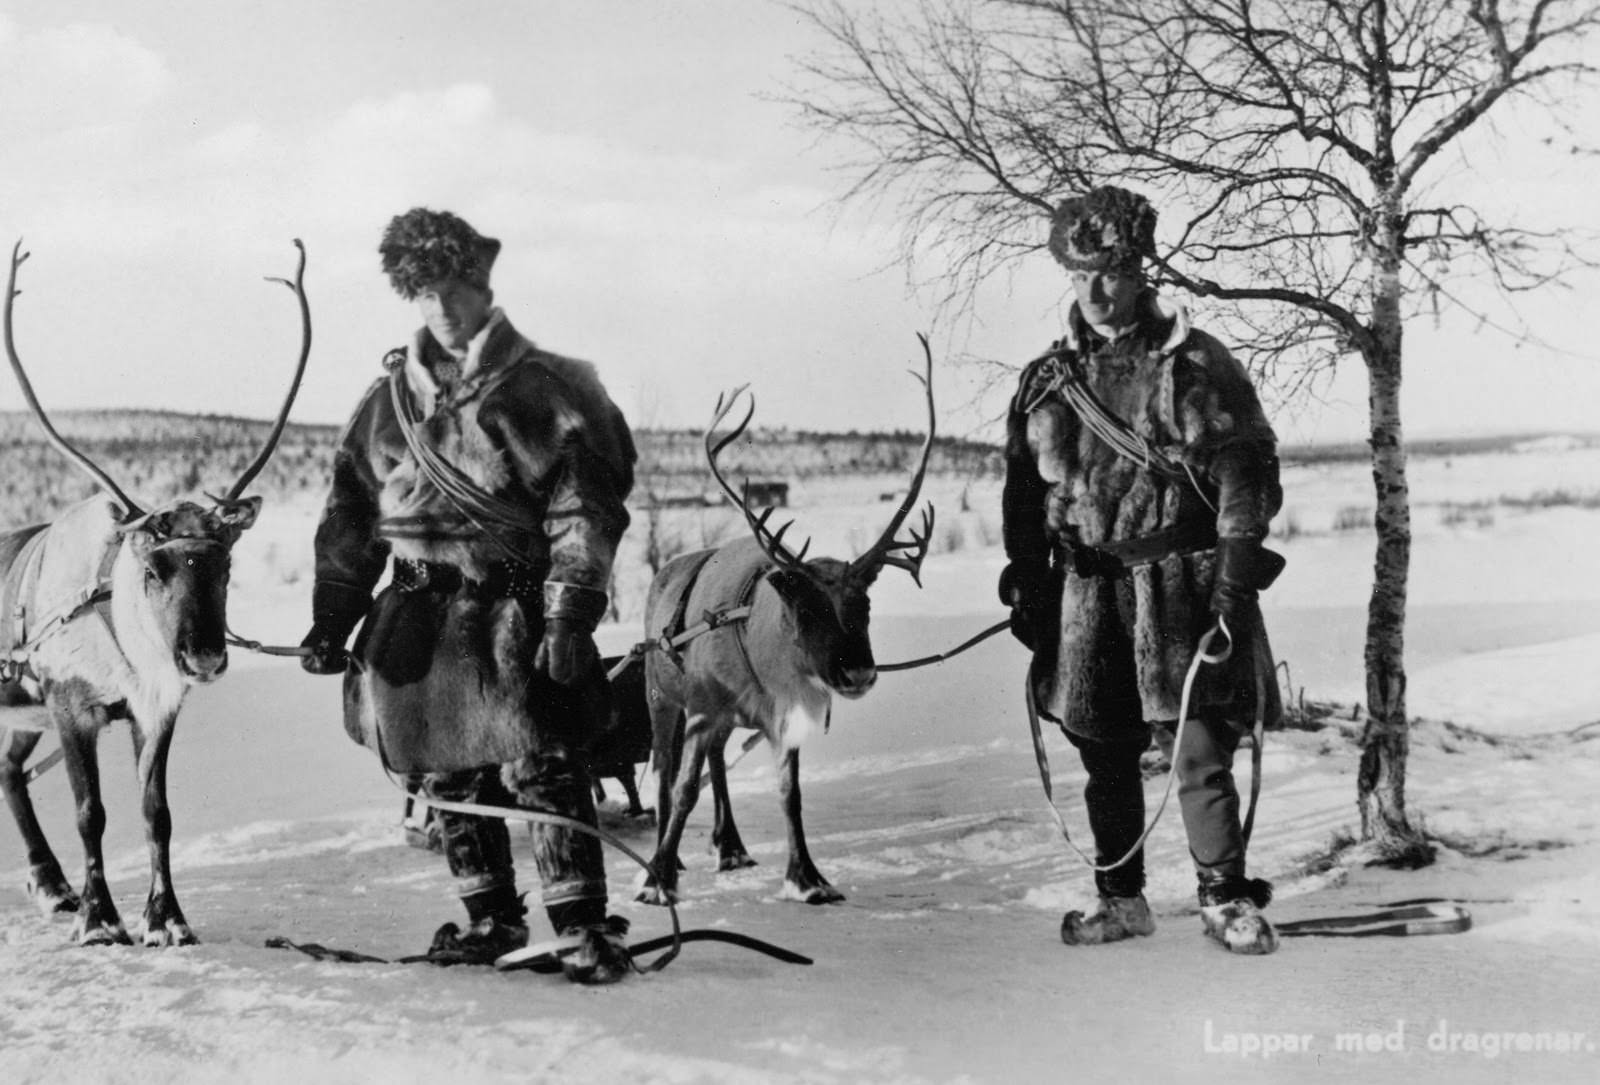 Sami men with reindeer in Northern Sweden in 1939.